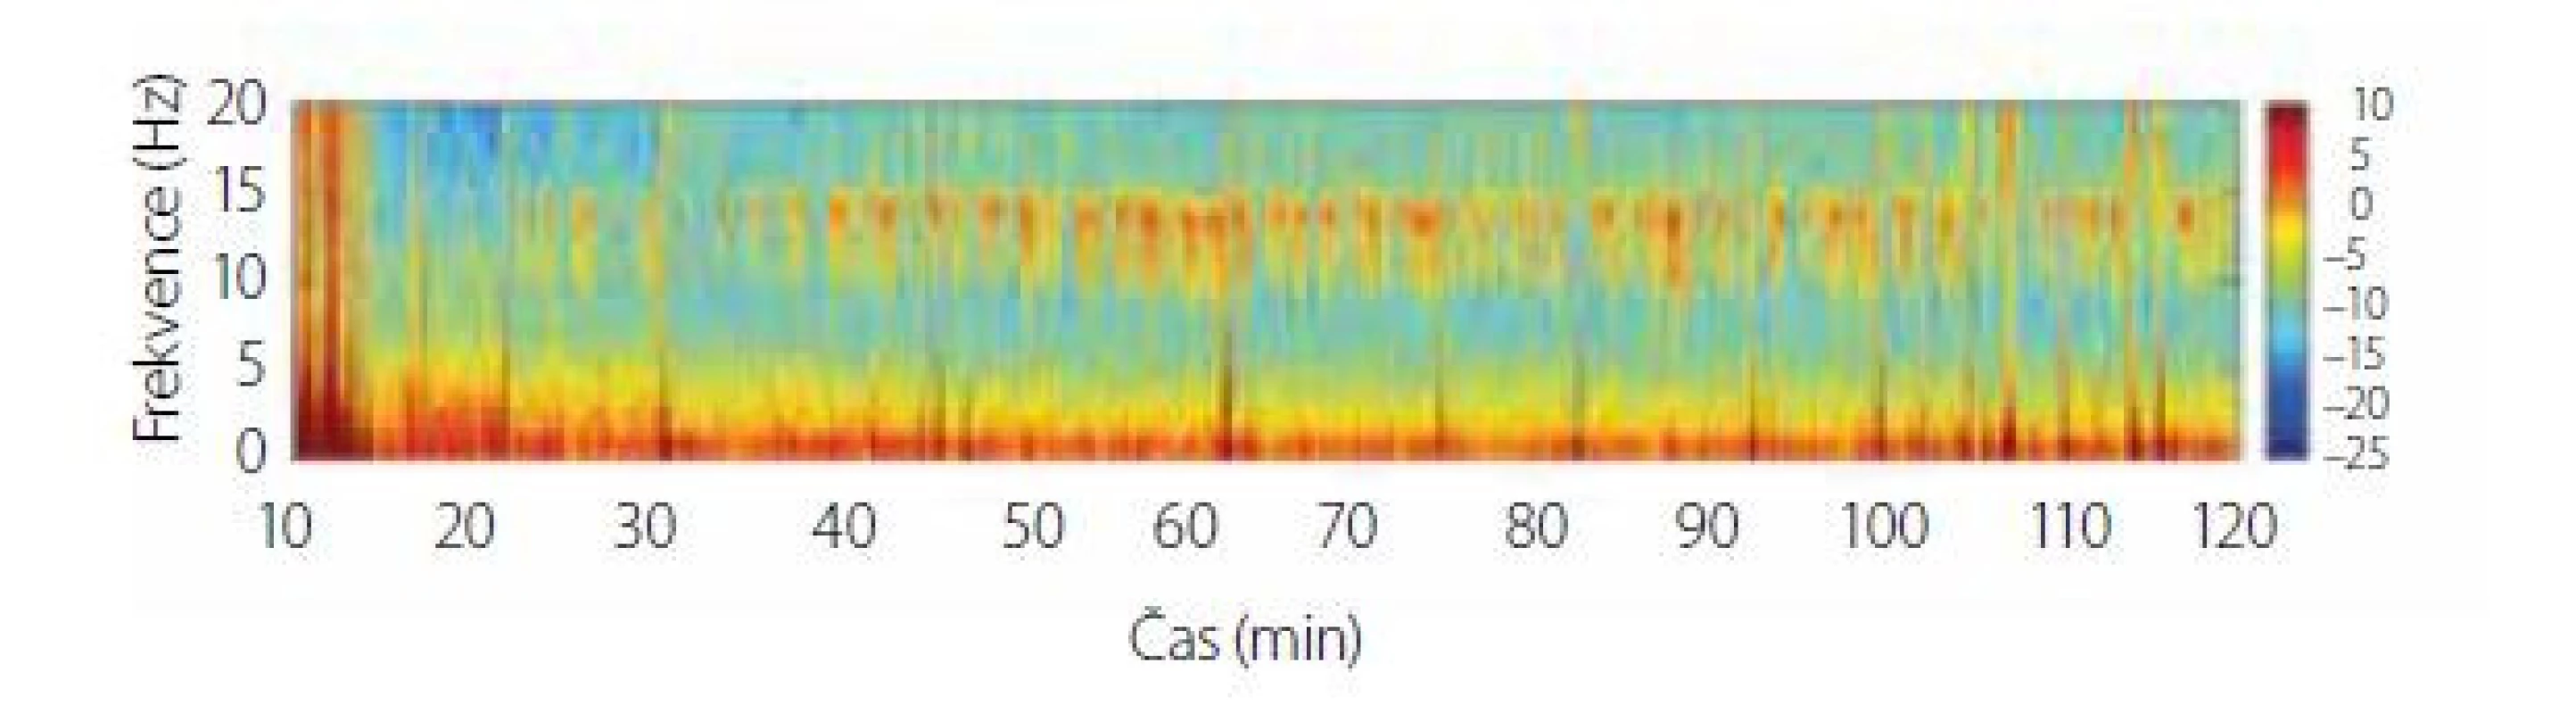 Spektrogram dexmedetomidinu v sedativní dávce. Na spektrogramu
jsou patrné pomalé oscilace v pásmu SW-δ a vřetena v pásmu α/β
(9-15 Hz). Upraveno z [10]